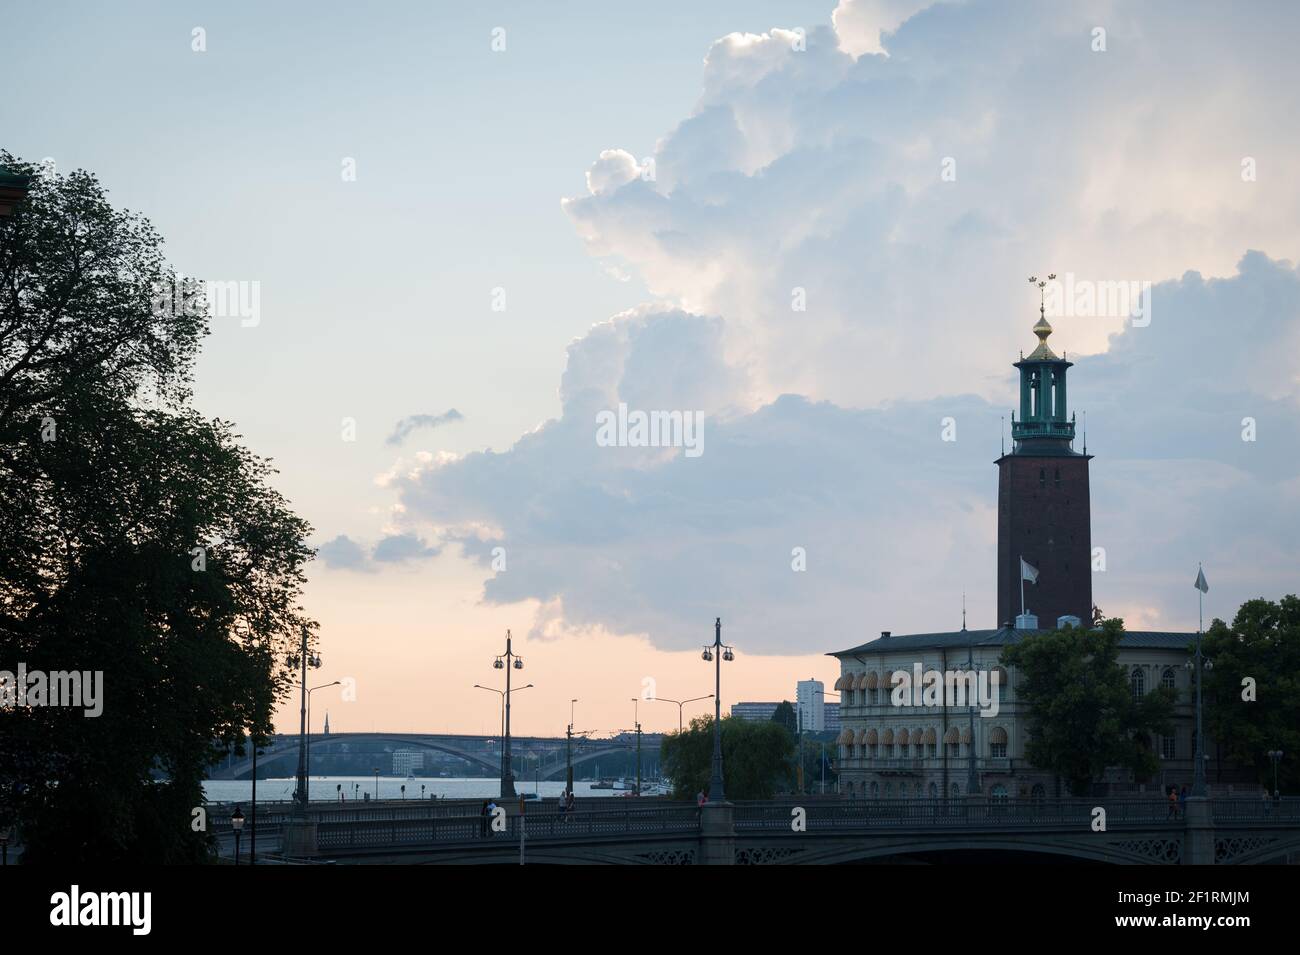 Storm clouds behind the Stadshuset or Stockholms stadshus (City Hall), Kungsholmen, Stockholm, Sweden. Stock Photo